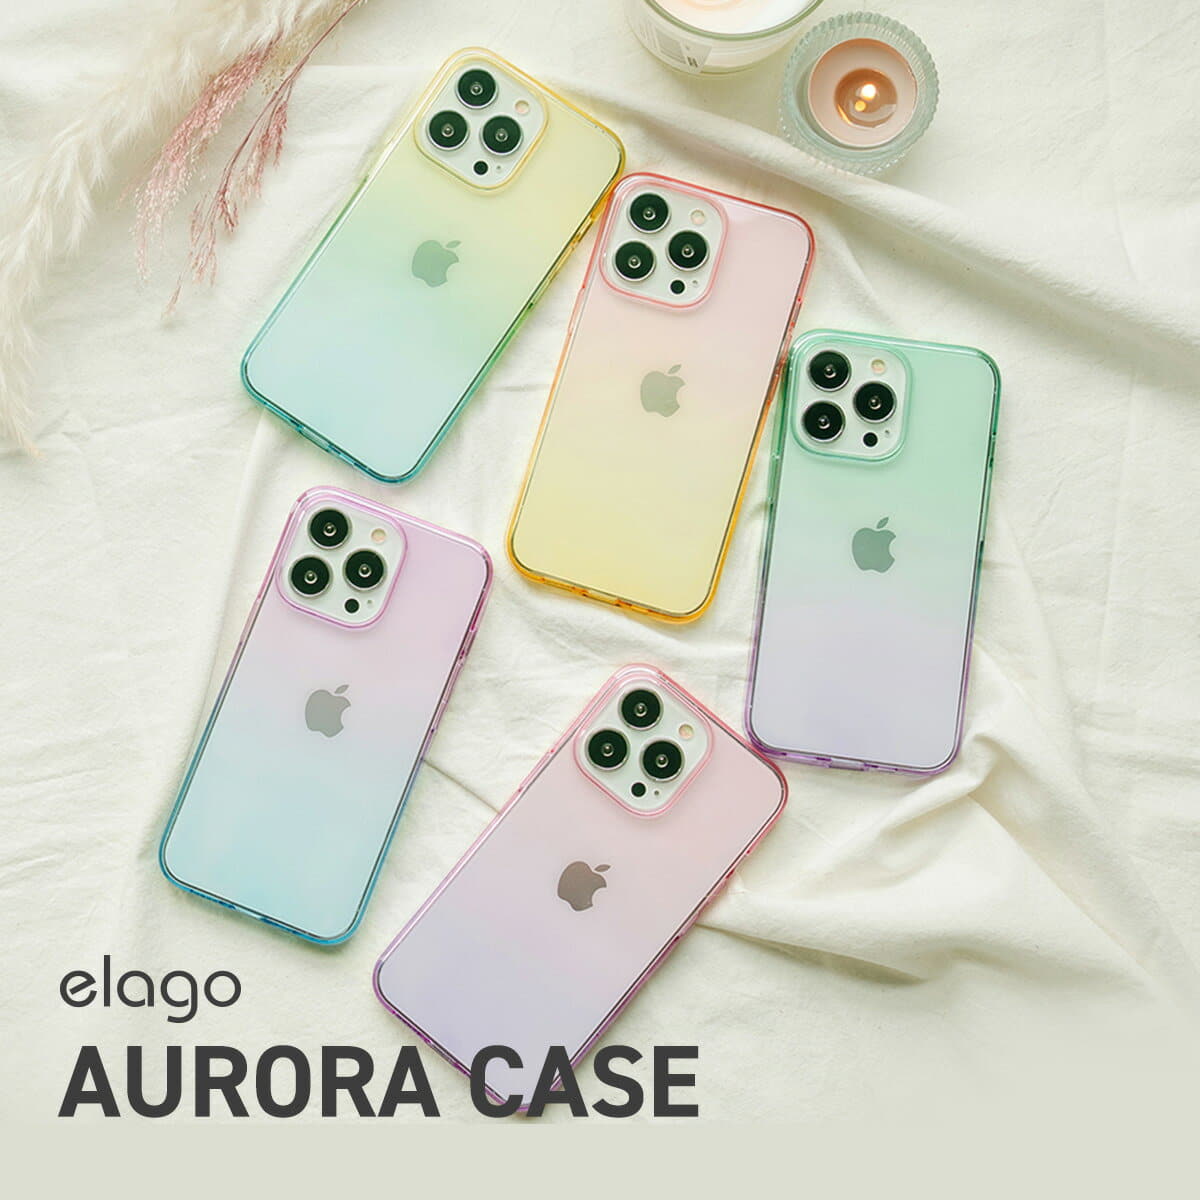 New]iPhone13 mini case aurora Korea-like clear case cover gradation cover  case [Apple iPhone13mini 13 Mini 13mini correspondence] elago AURORA CASE -  BE FORWARD Store